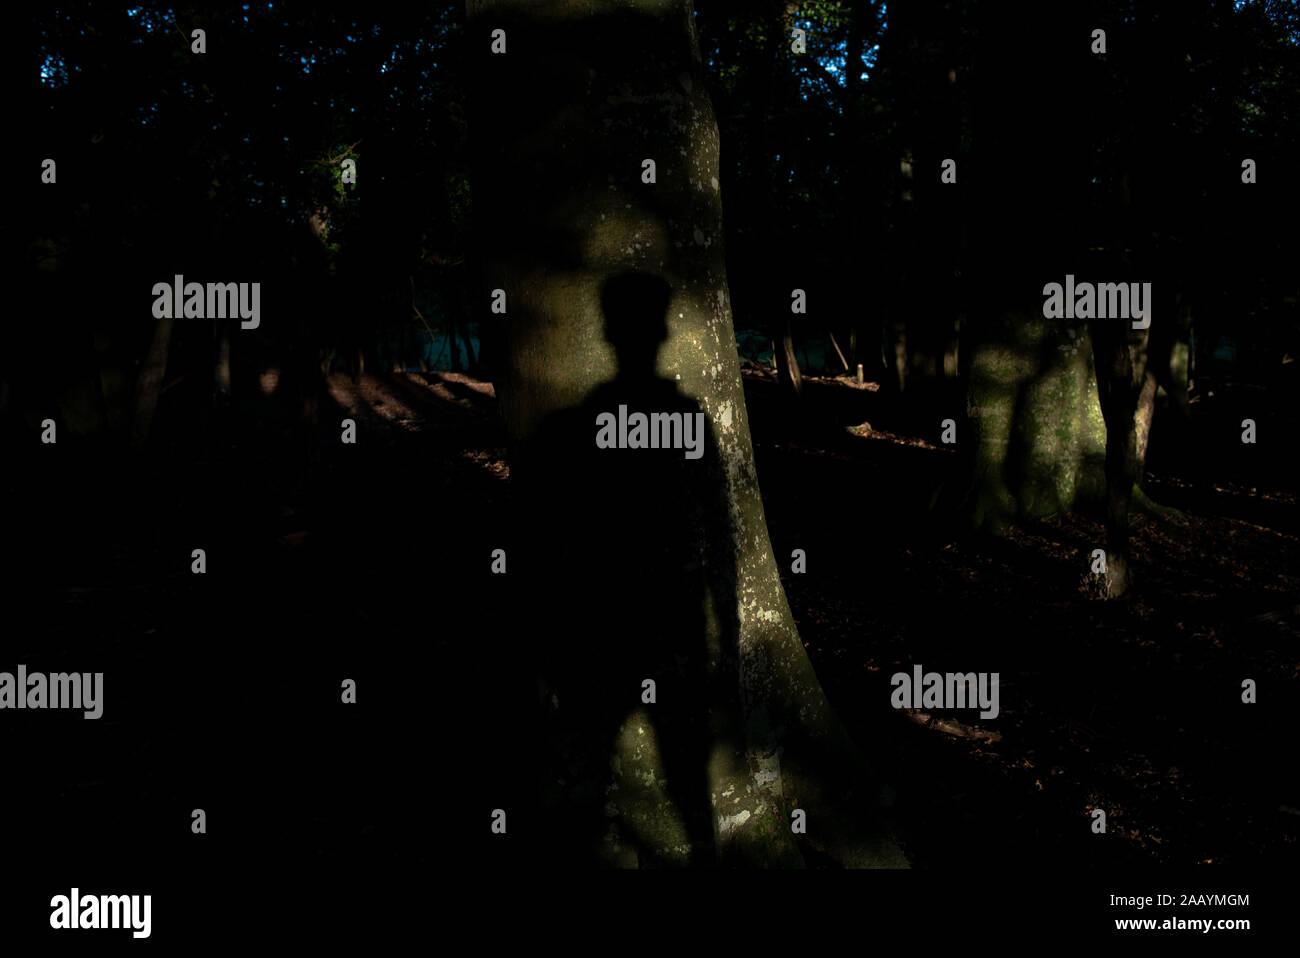 Eine gespenstische Schatten eines Jungen auf einem Baum in einem Wald aufrecht, die eine geheimnisvolle Geschichte ausklappen projiziert. Stockfoto